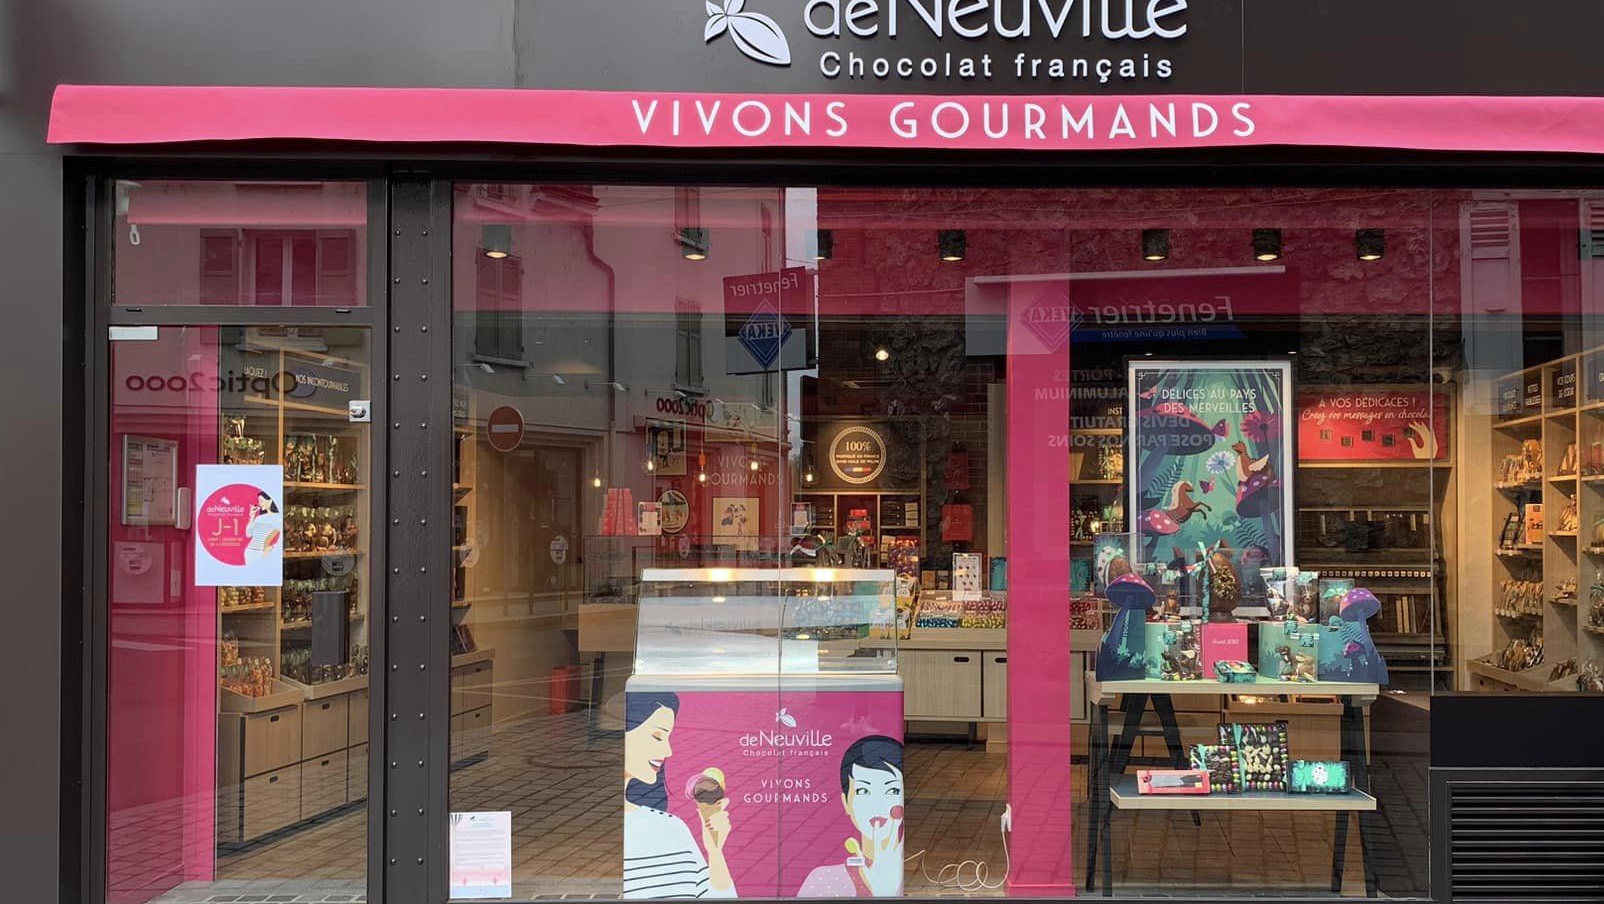 De Neuville Conflans Sainte Honorine – Chocolat français